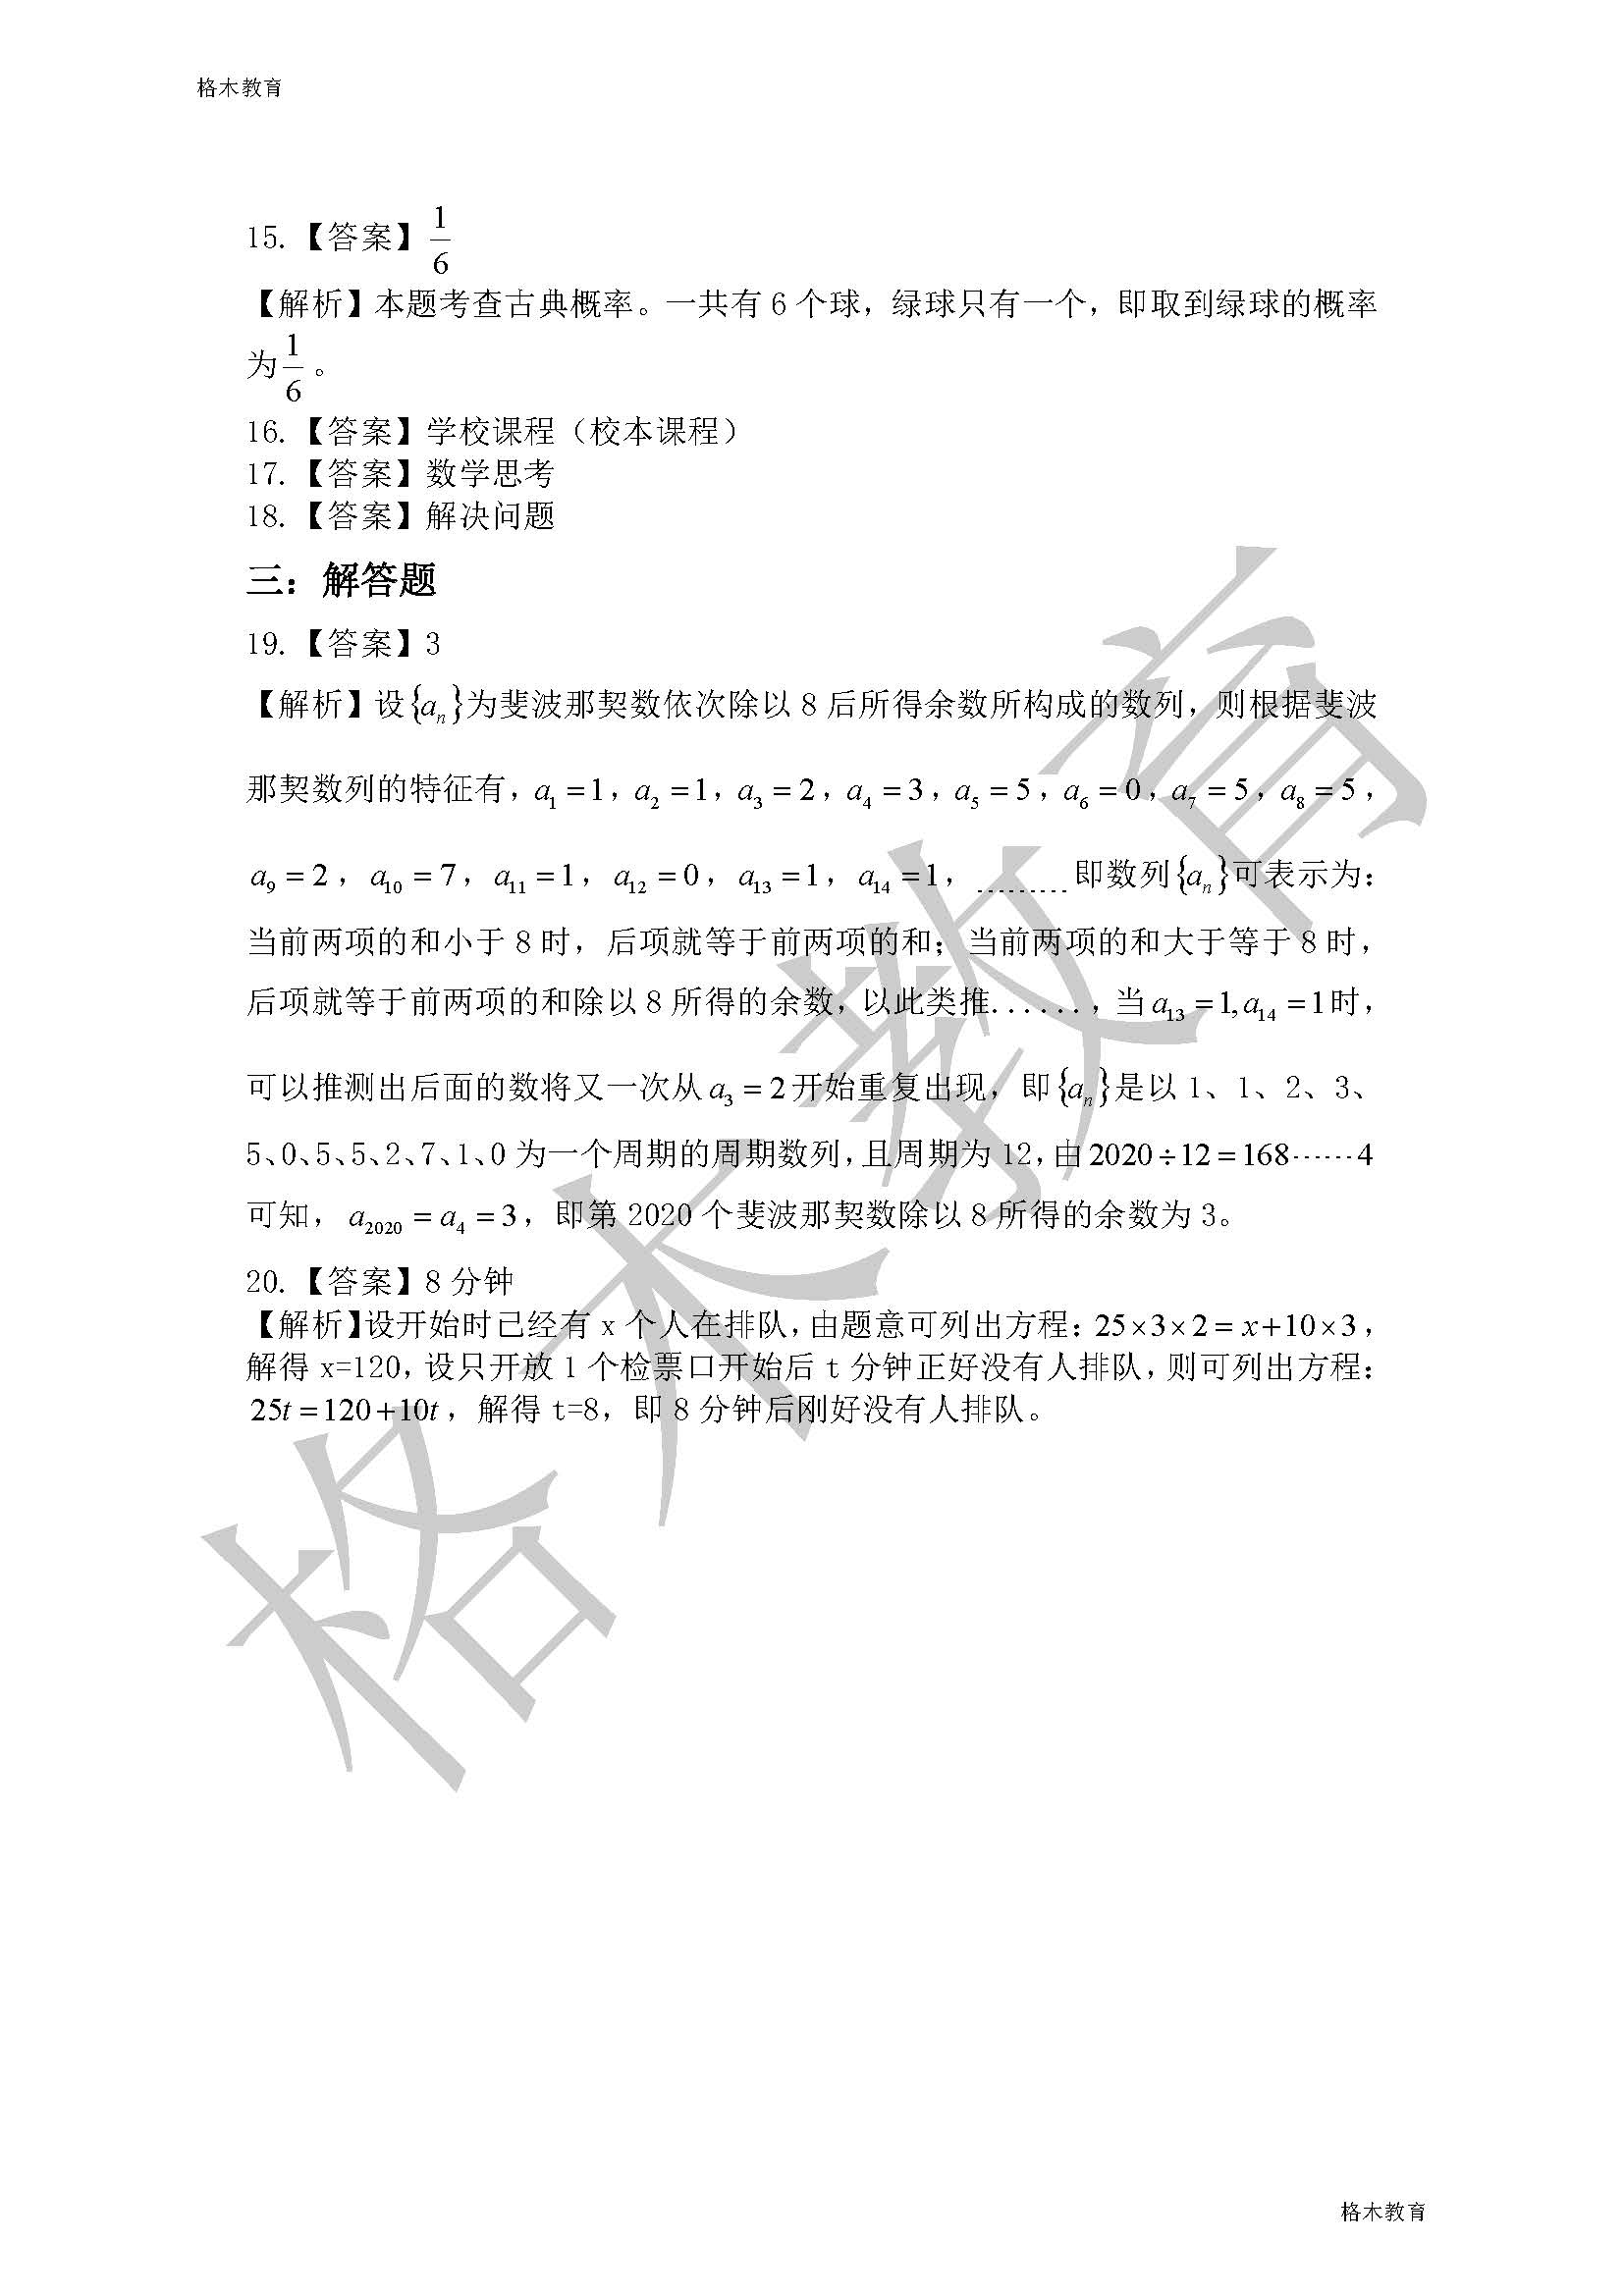 2020.8.8湖北省义务教师小学数学真题答案_页面_2.jpg